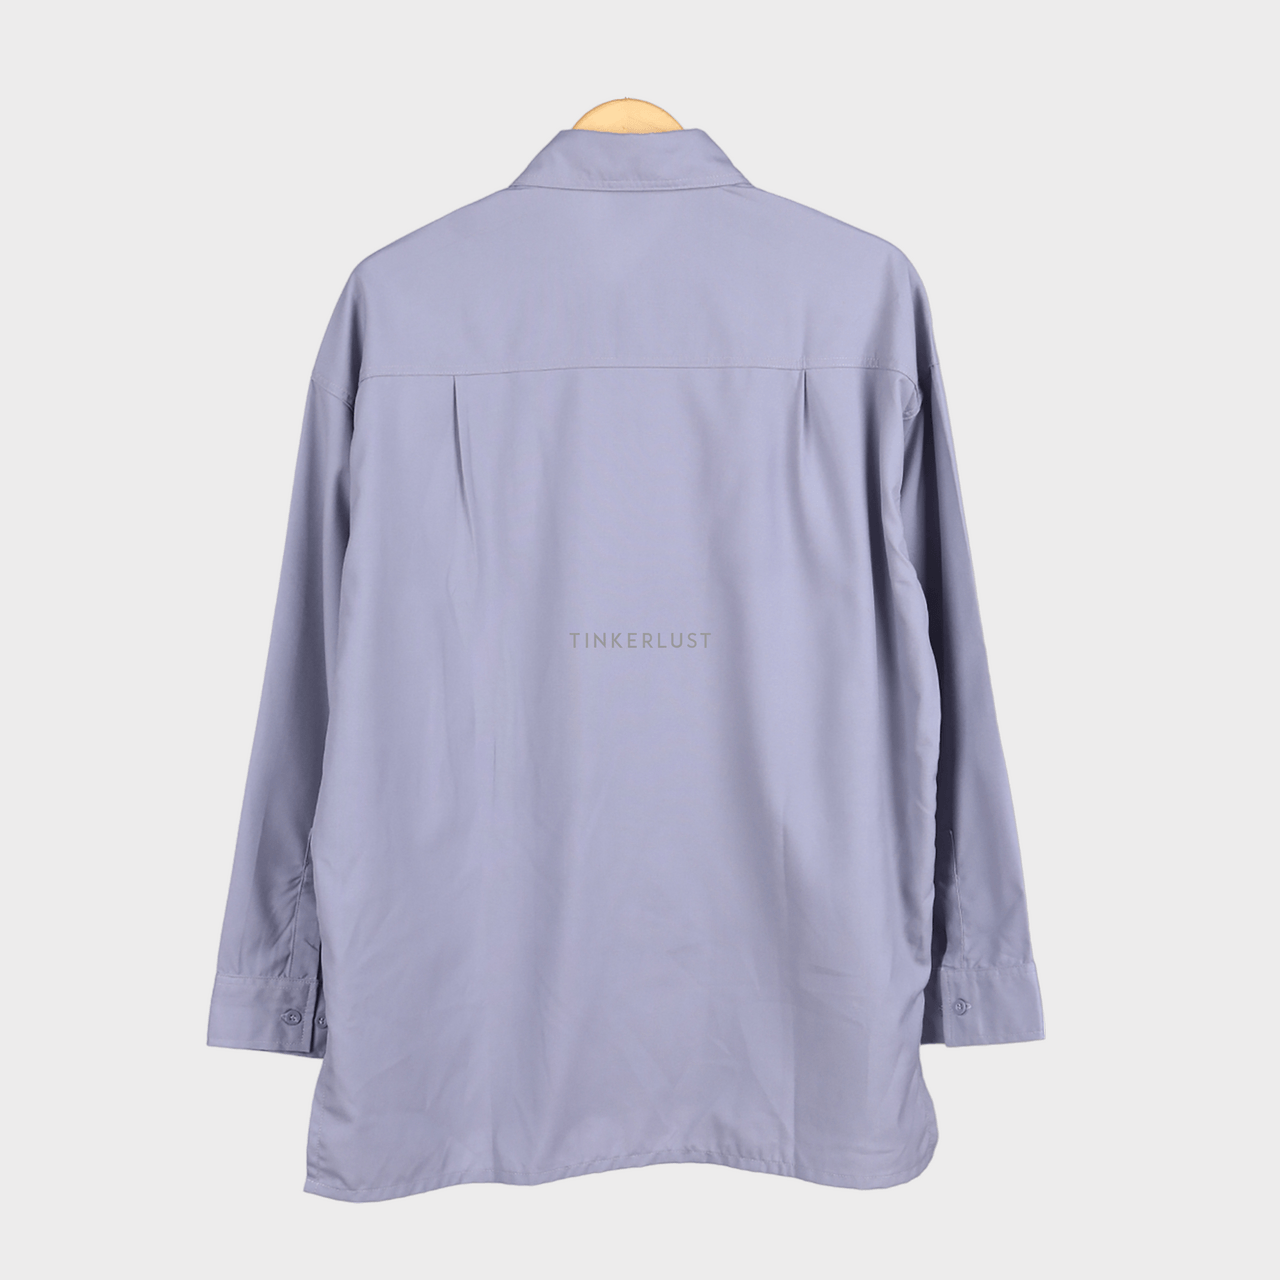 Antidot Grey Shirt